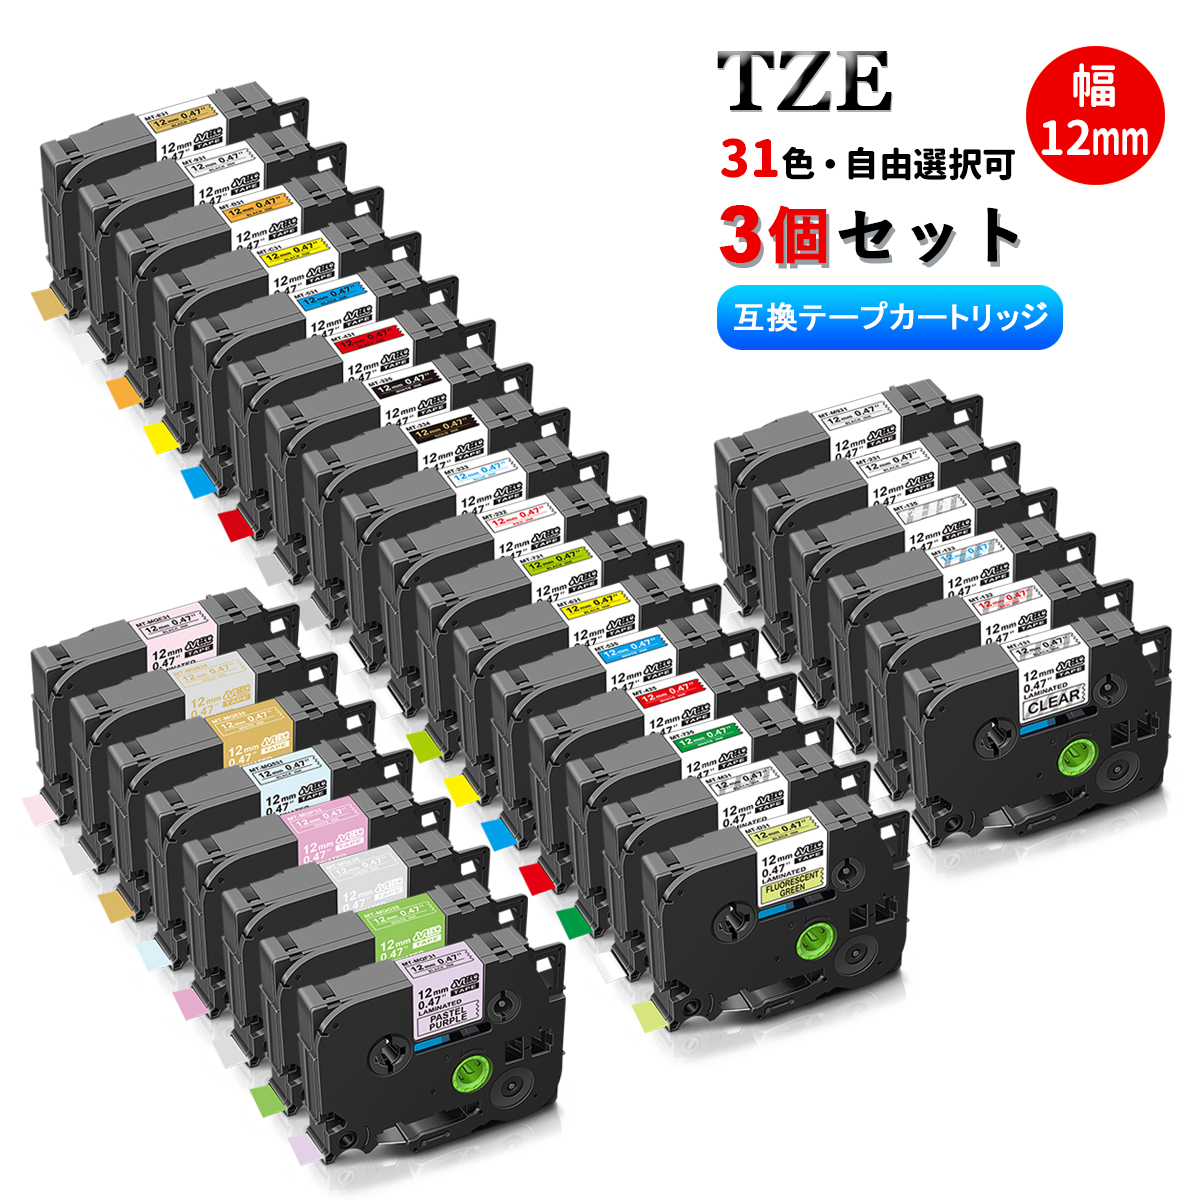 ギフト Tzeテープ 24mm幅X8m巻 12色選択 互換品 4個 P-Touch用